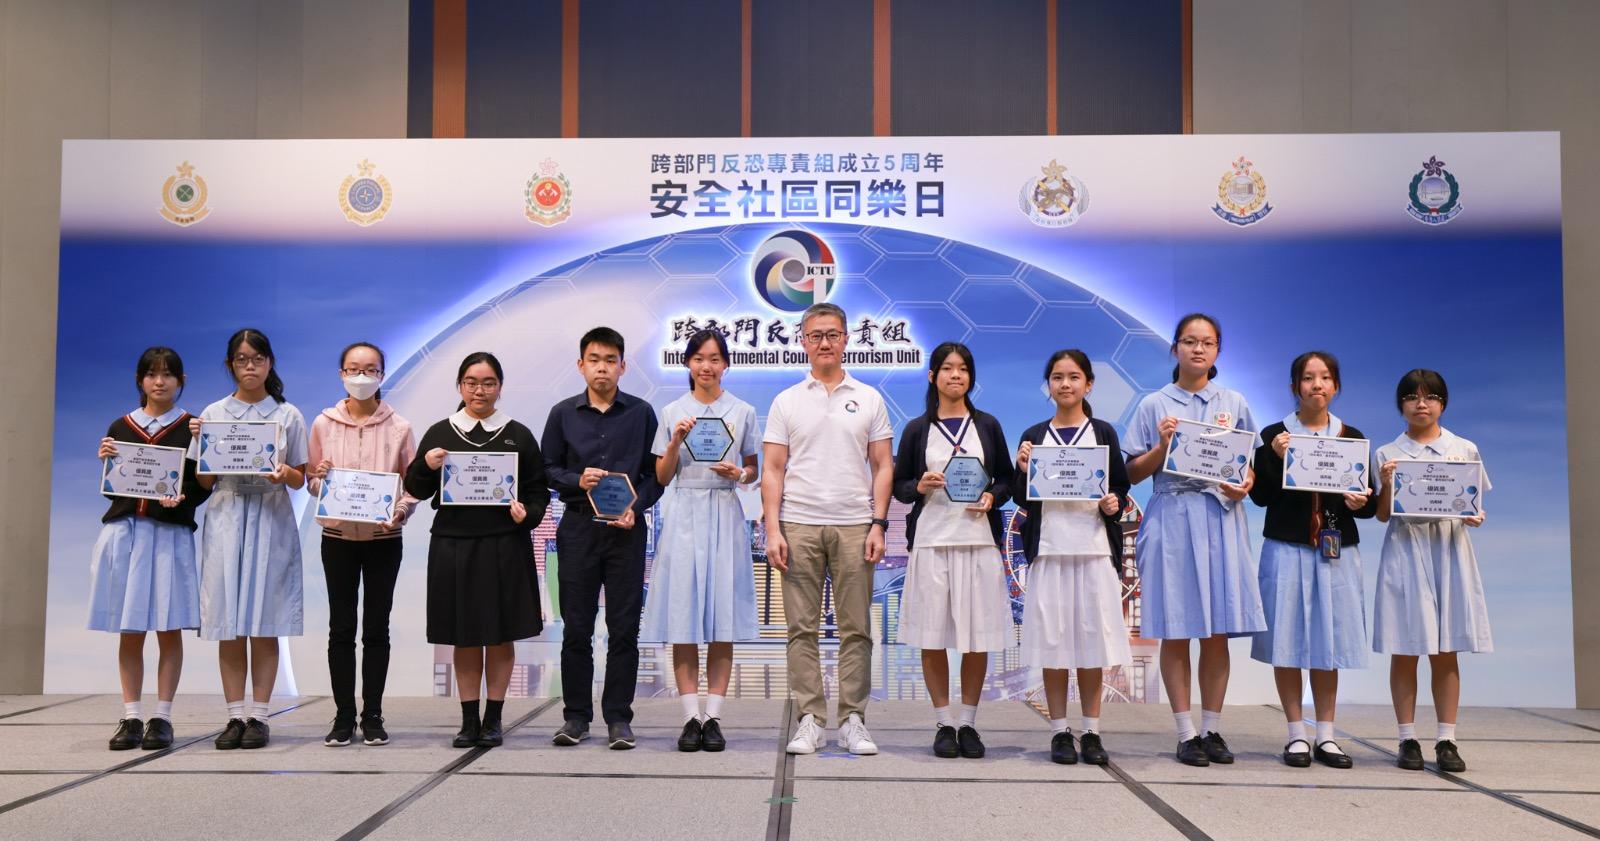 跨部門反恐專責組今日（四月二十九日）在香港科學園舉辦「安全社區同樂日」。圖示警務處處長蕭澤頤頒獎予「5周年填色/廣告設計比賽」得獎者。